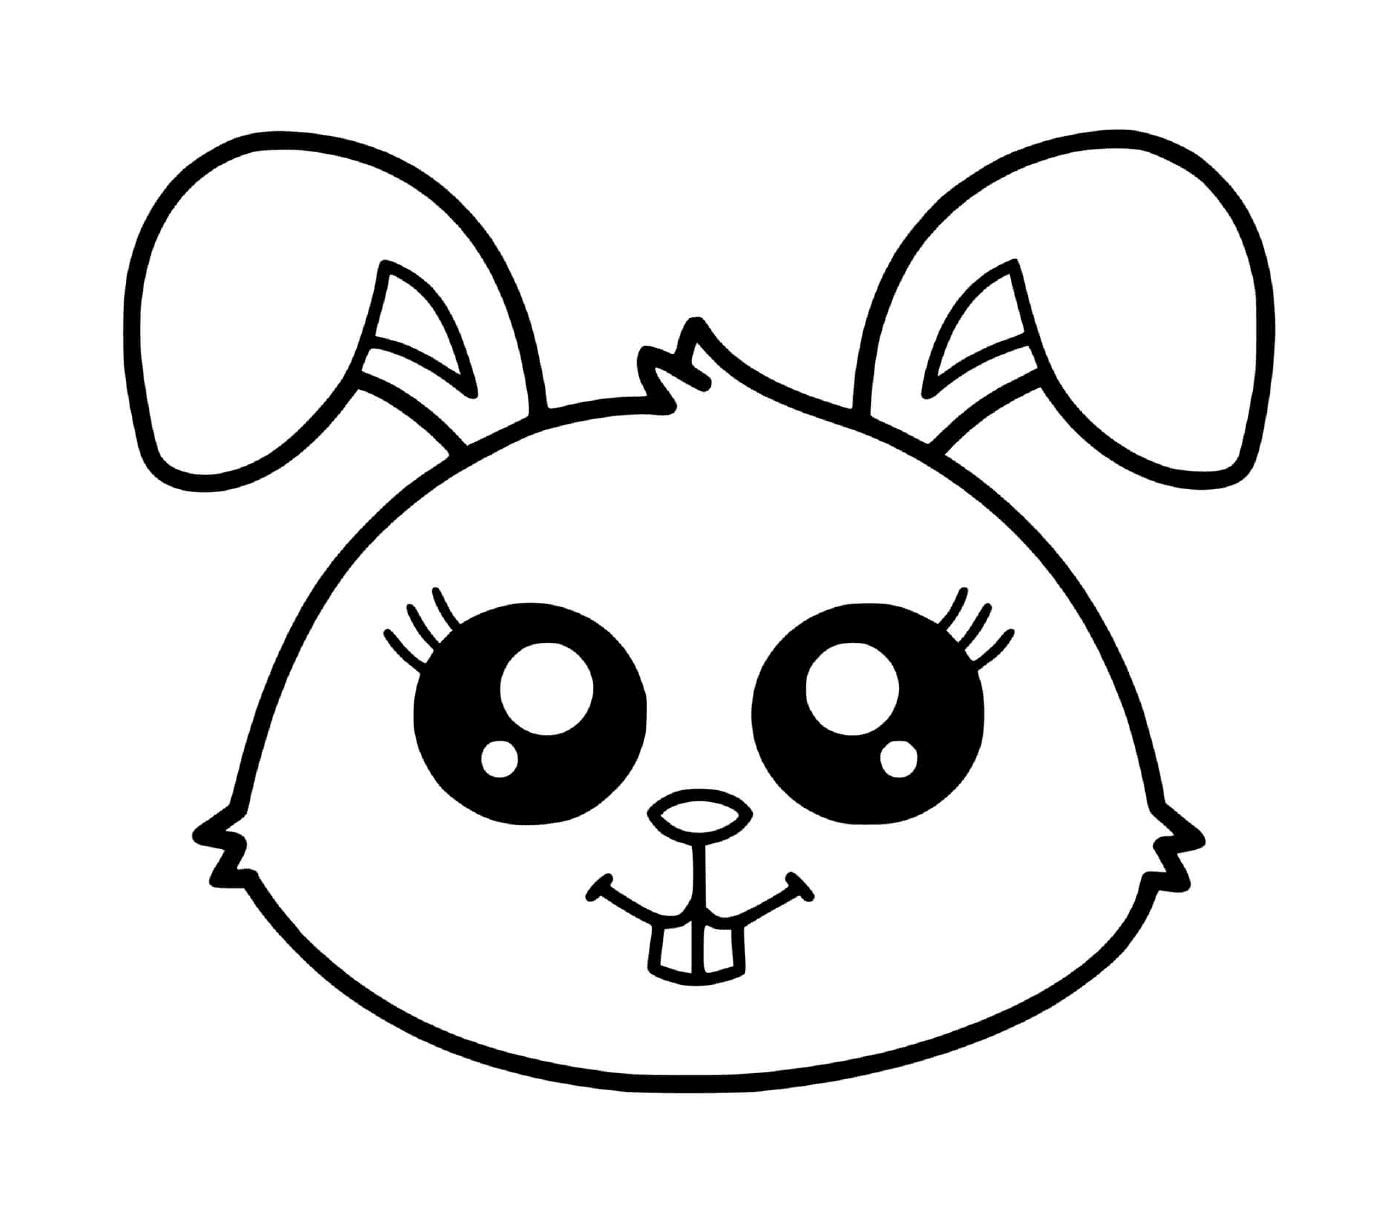  Un coniglio carino con le orecchie grandi 